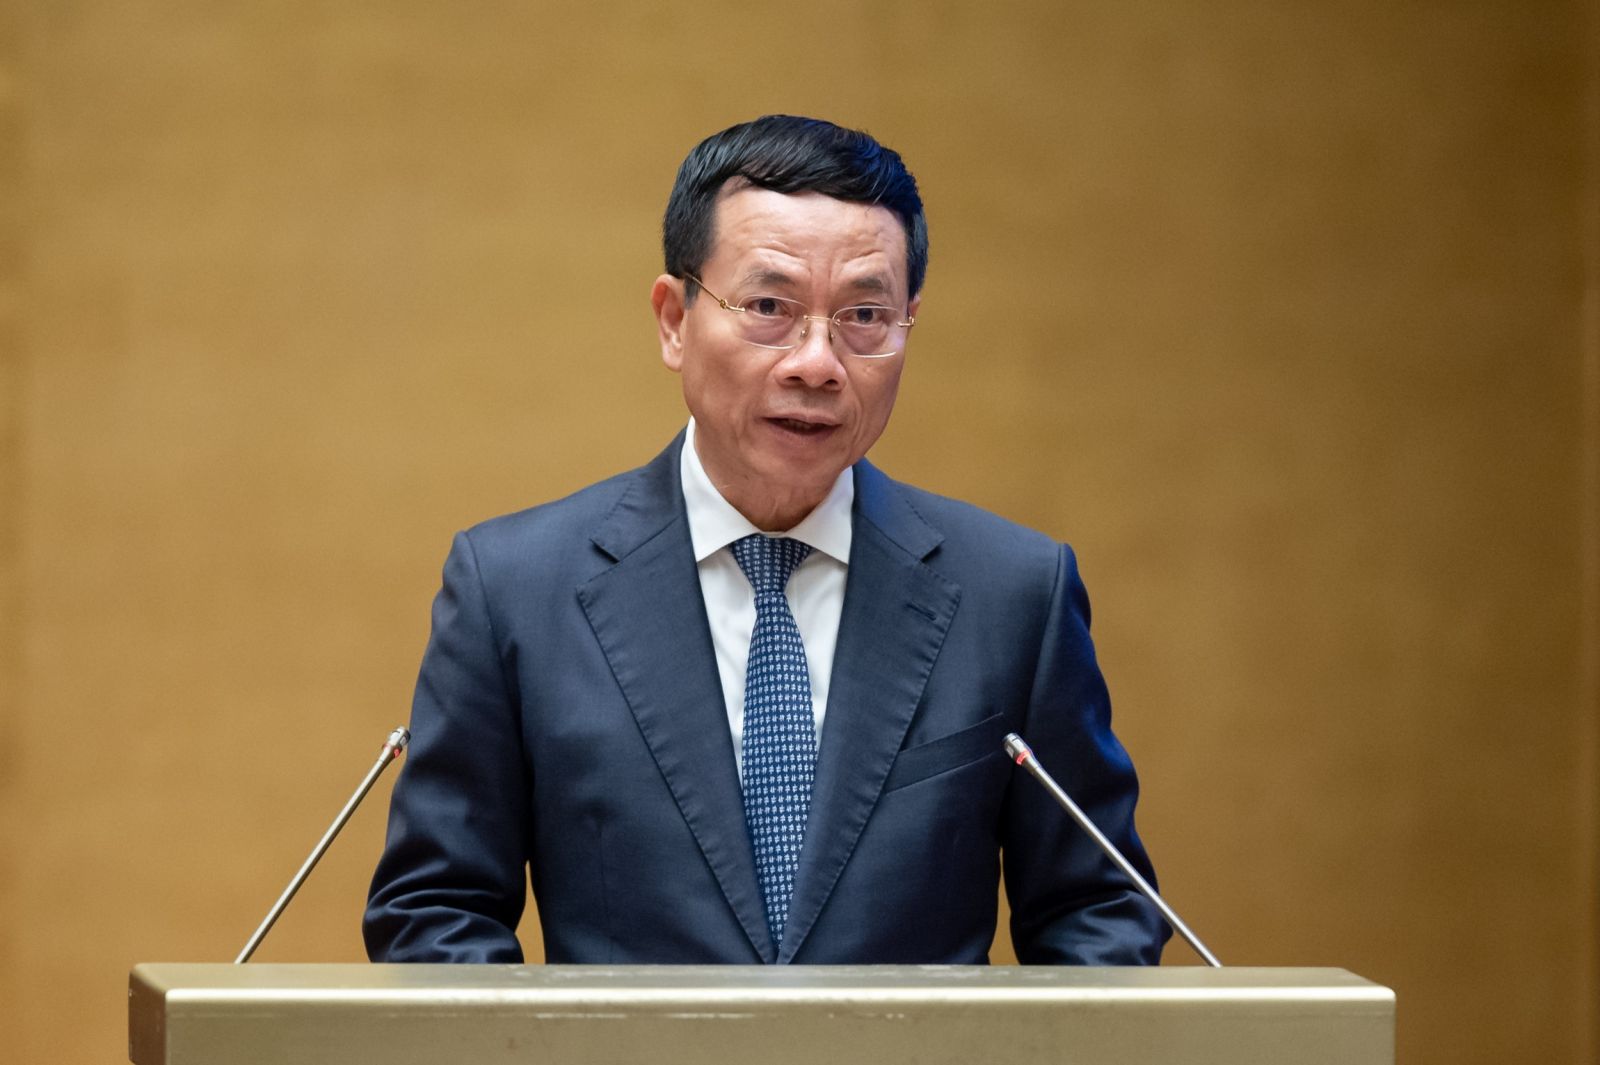 Bộ trưởng Bộ Thông tin và Truyền thông Nguyễn Mạnh Hùng, thừa ủy quyền của Thủ tướng Chính phủ trình bày Tờ trình về dự án Luật Viễn thông (sửa đổi).